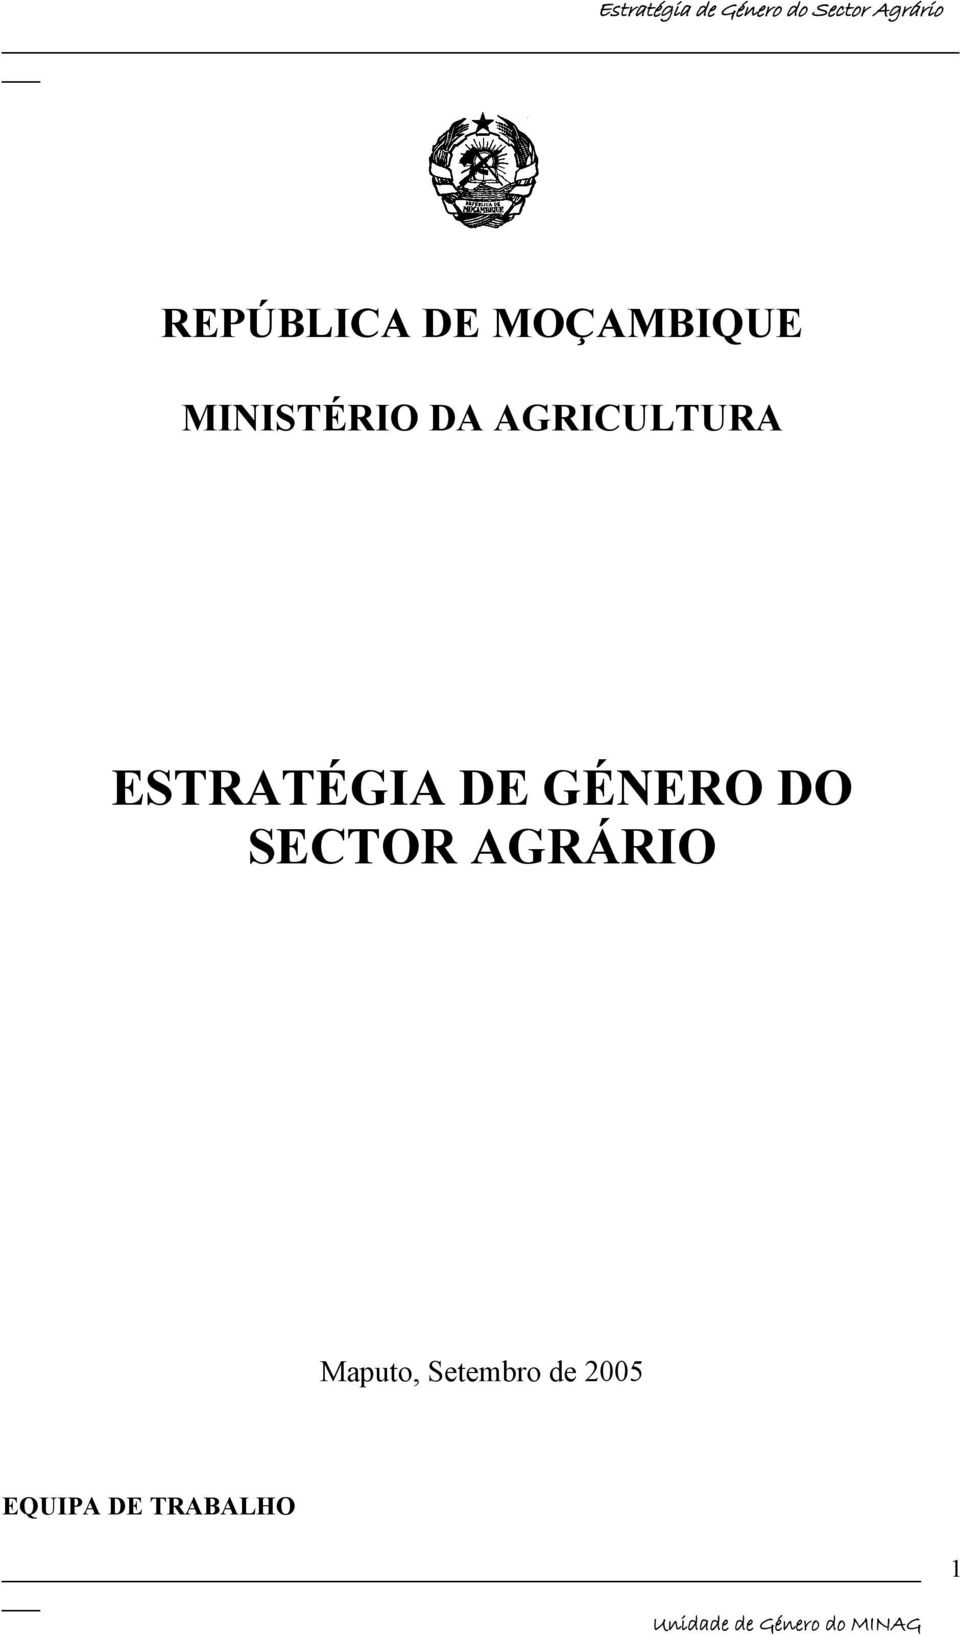 ESTRATÉGIA DE GÉNERO DO SECTOR